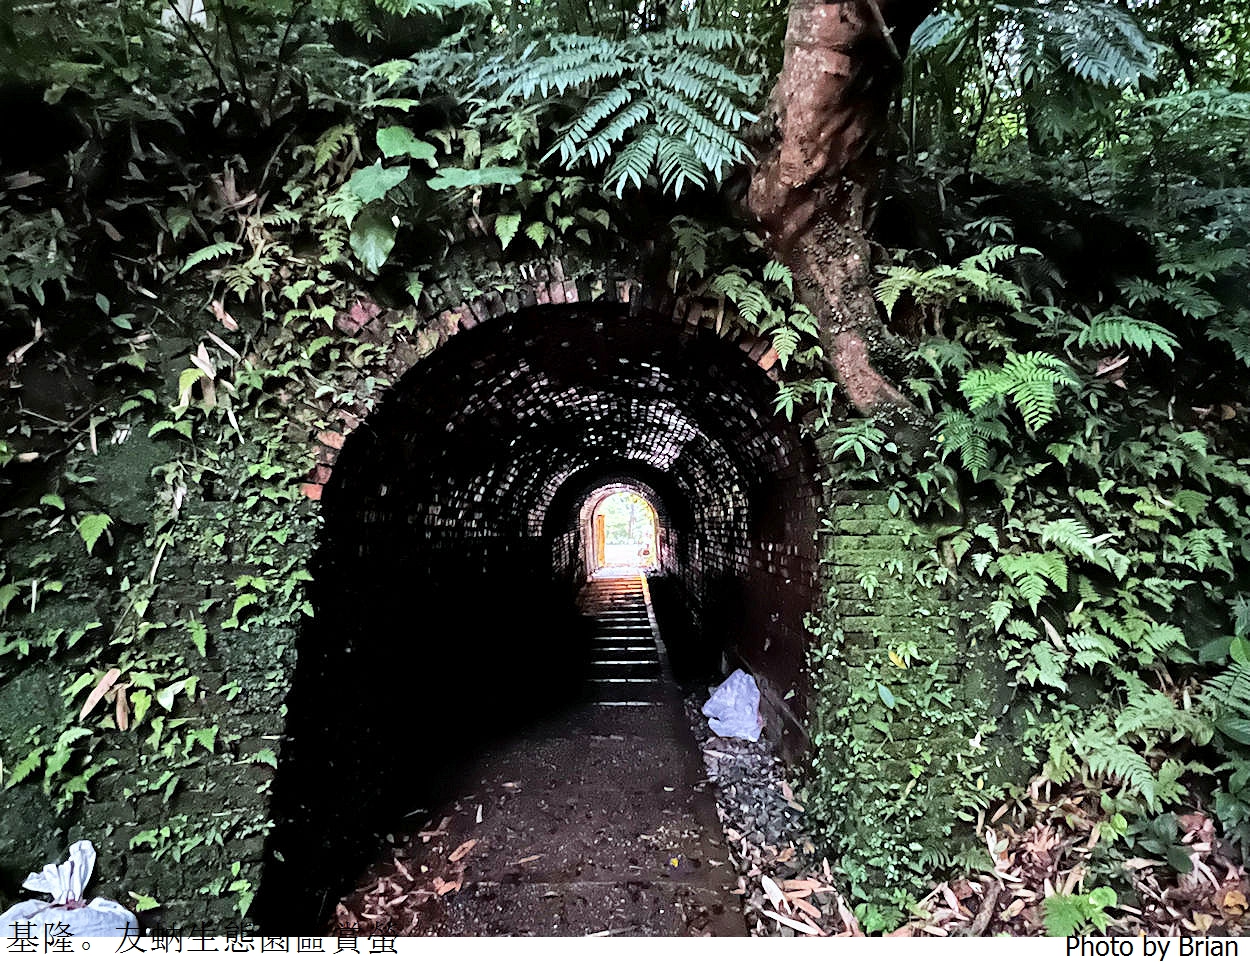 基隆賞螢秘境友蚋生態園區。穿過隧道輕鬆抵達賞螢秘境